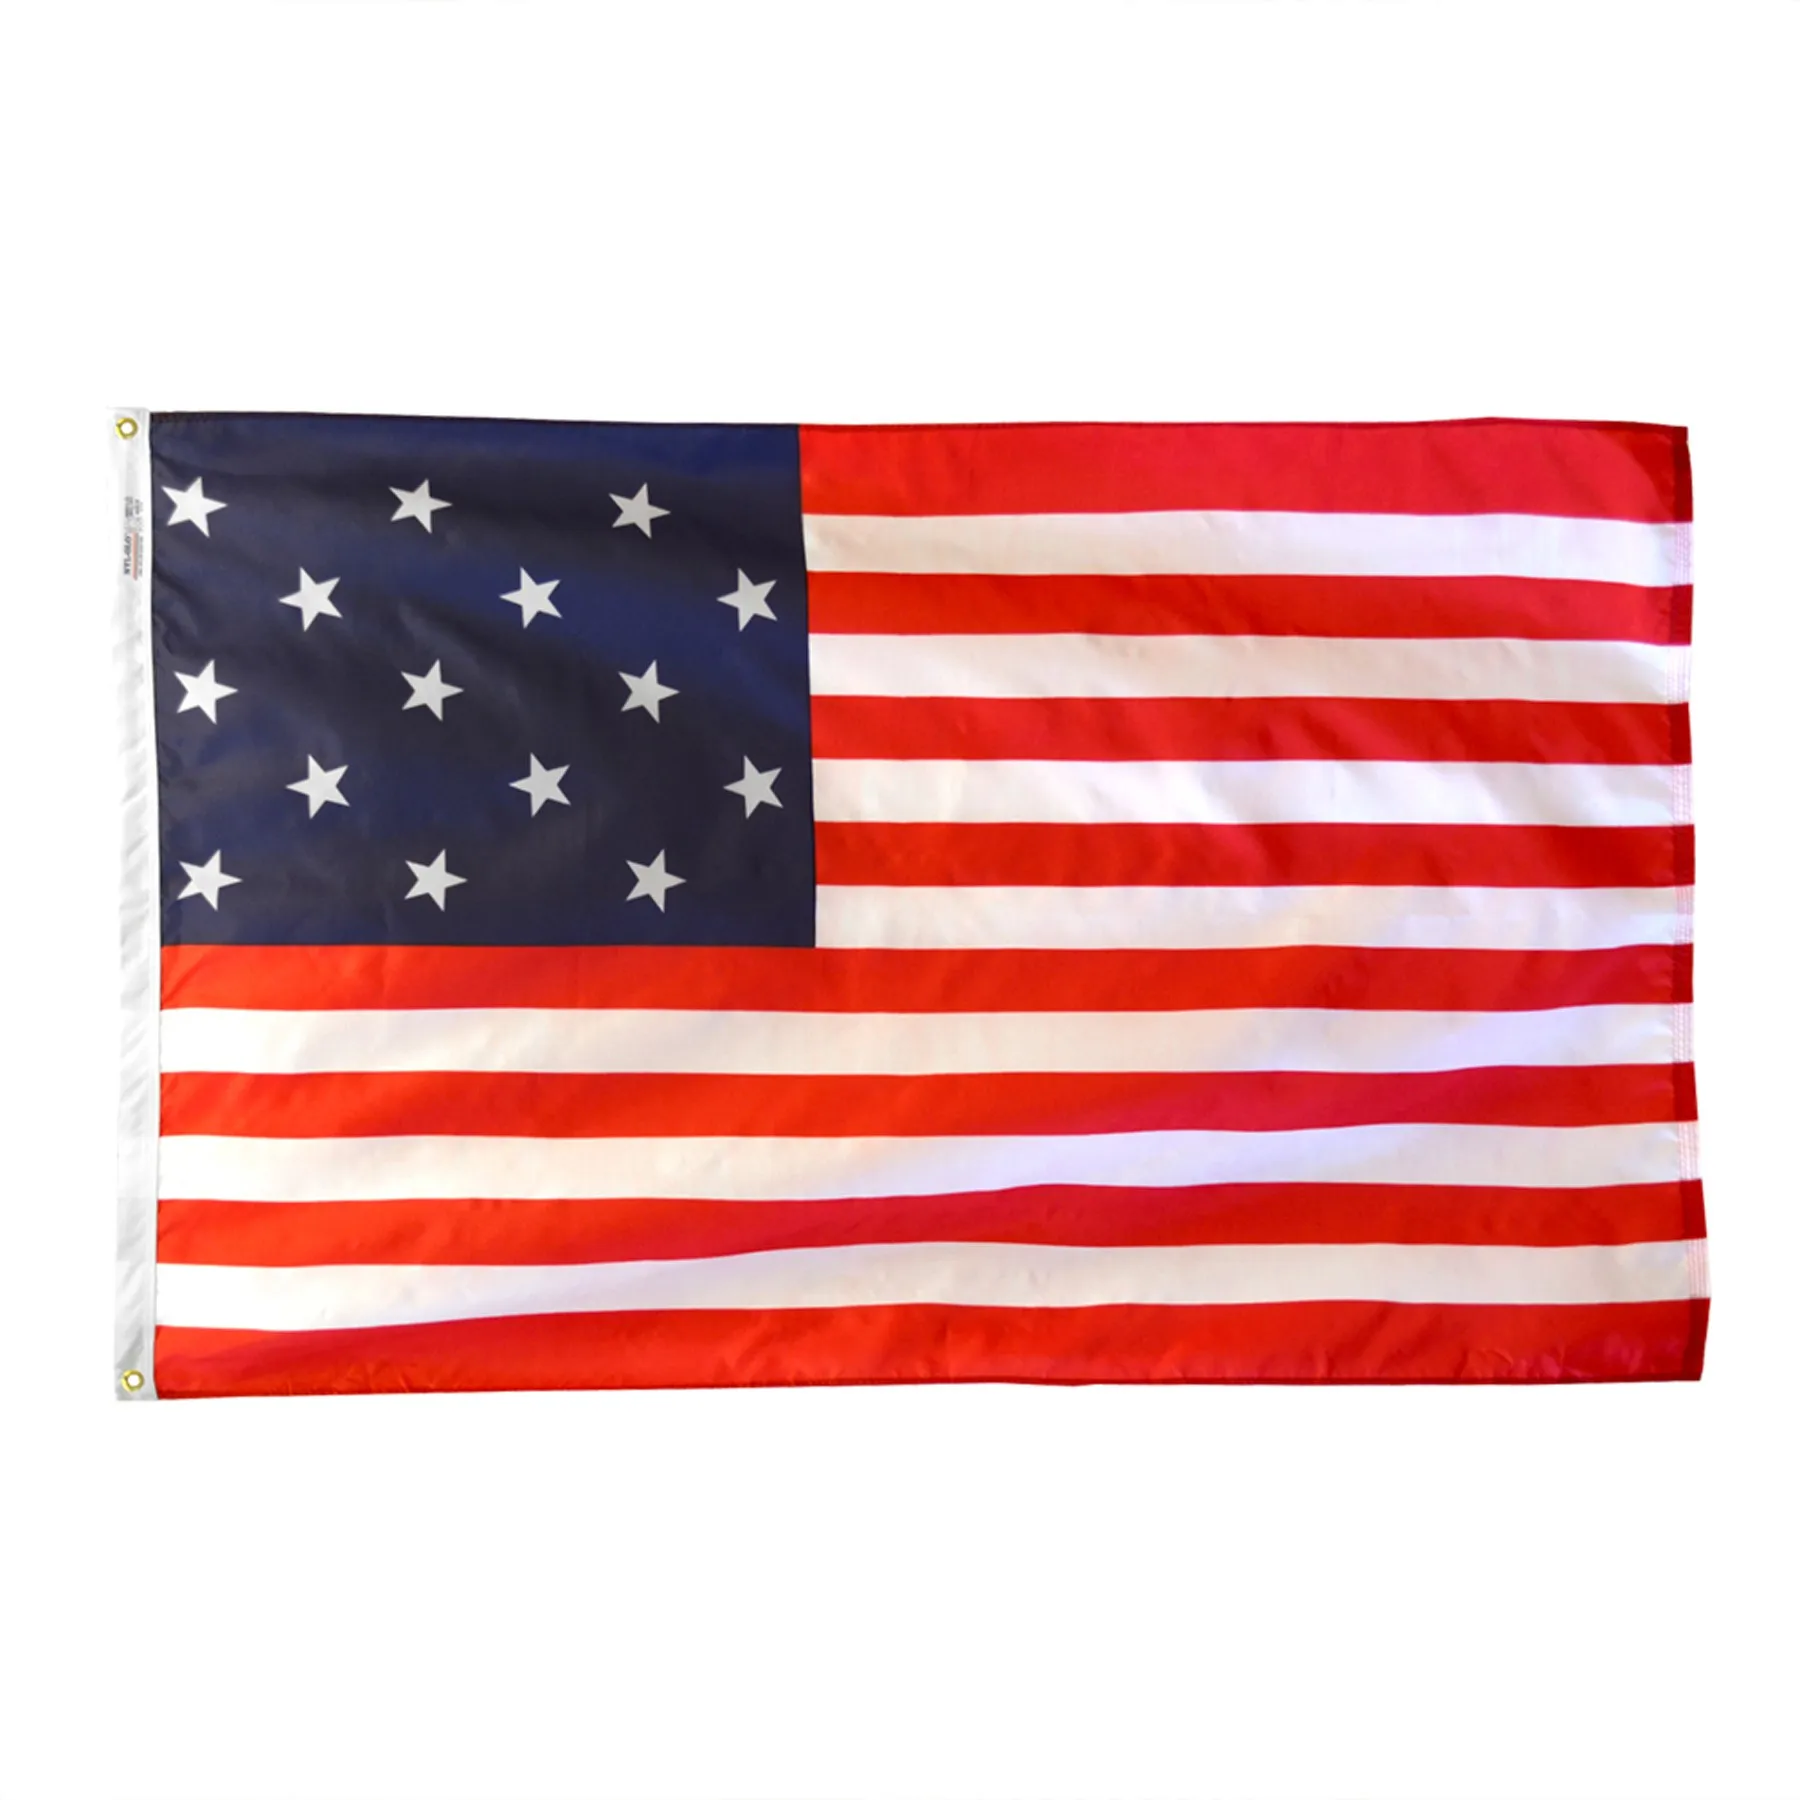 美国的国旗是什么颜色图片